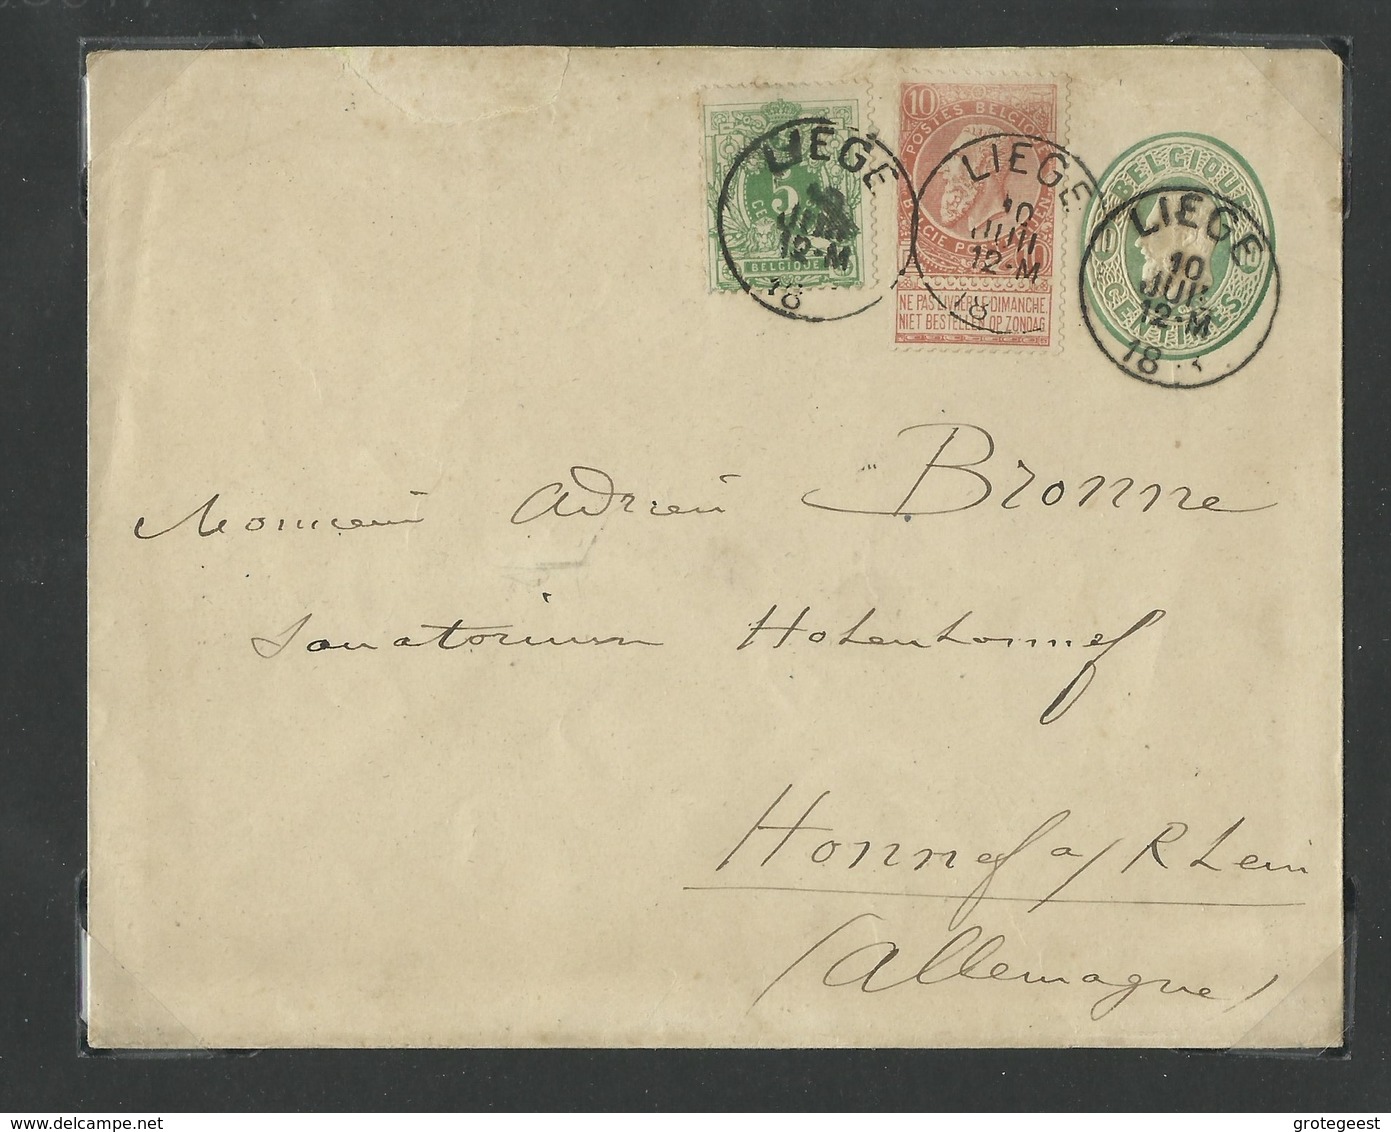 N°45-57 - 5 Centimes Em. 1884 Et 10 Centimes Fine Barbe En Affr. Compl. Sur E.P. Env. 10c.(Em. 1869)  Obl. Sc LIEGE Le - Enveloppes